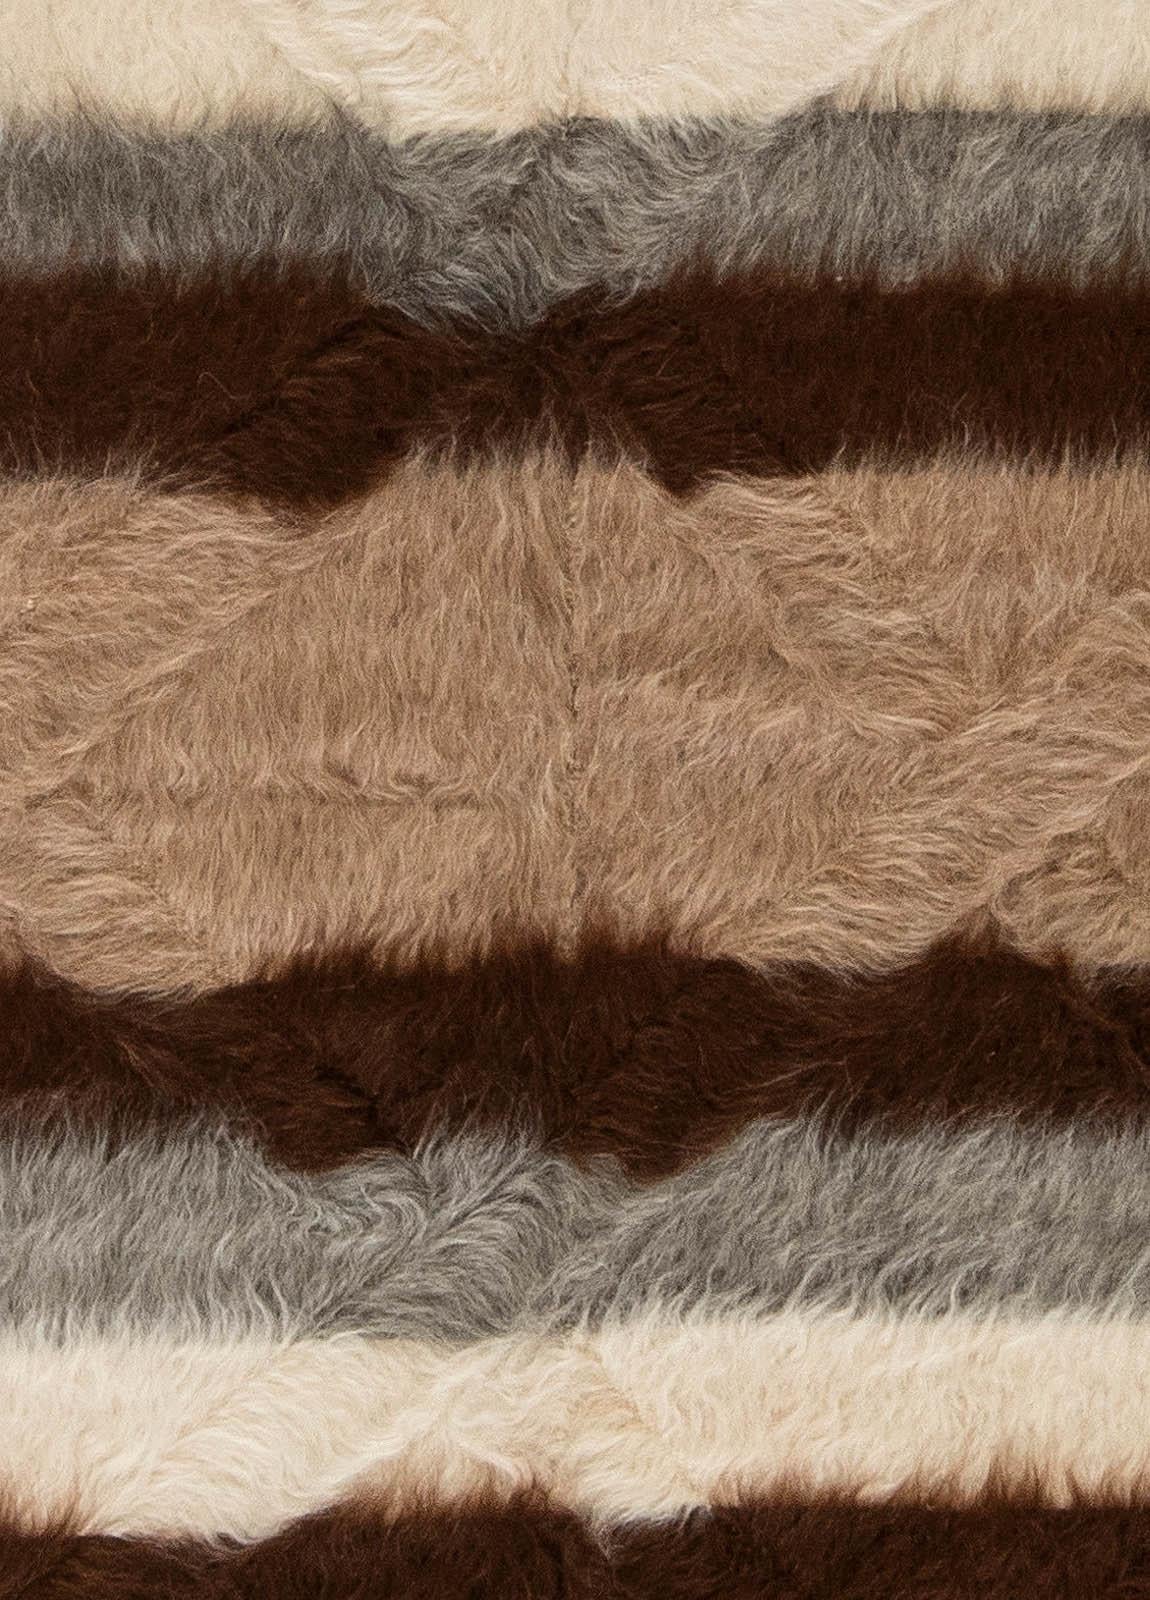 Collection Taurus tapis moderne en poil de chèvre rayé fait main par Doris Leslie Blau
Taille : 5'4